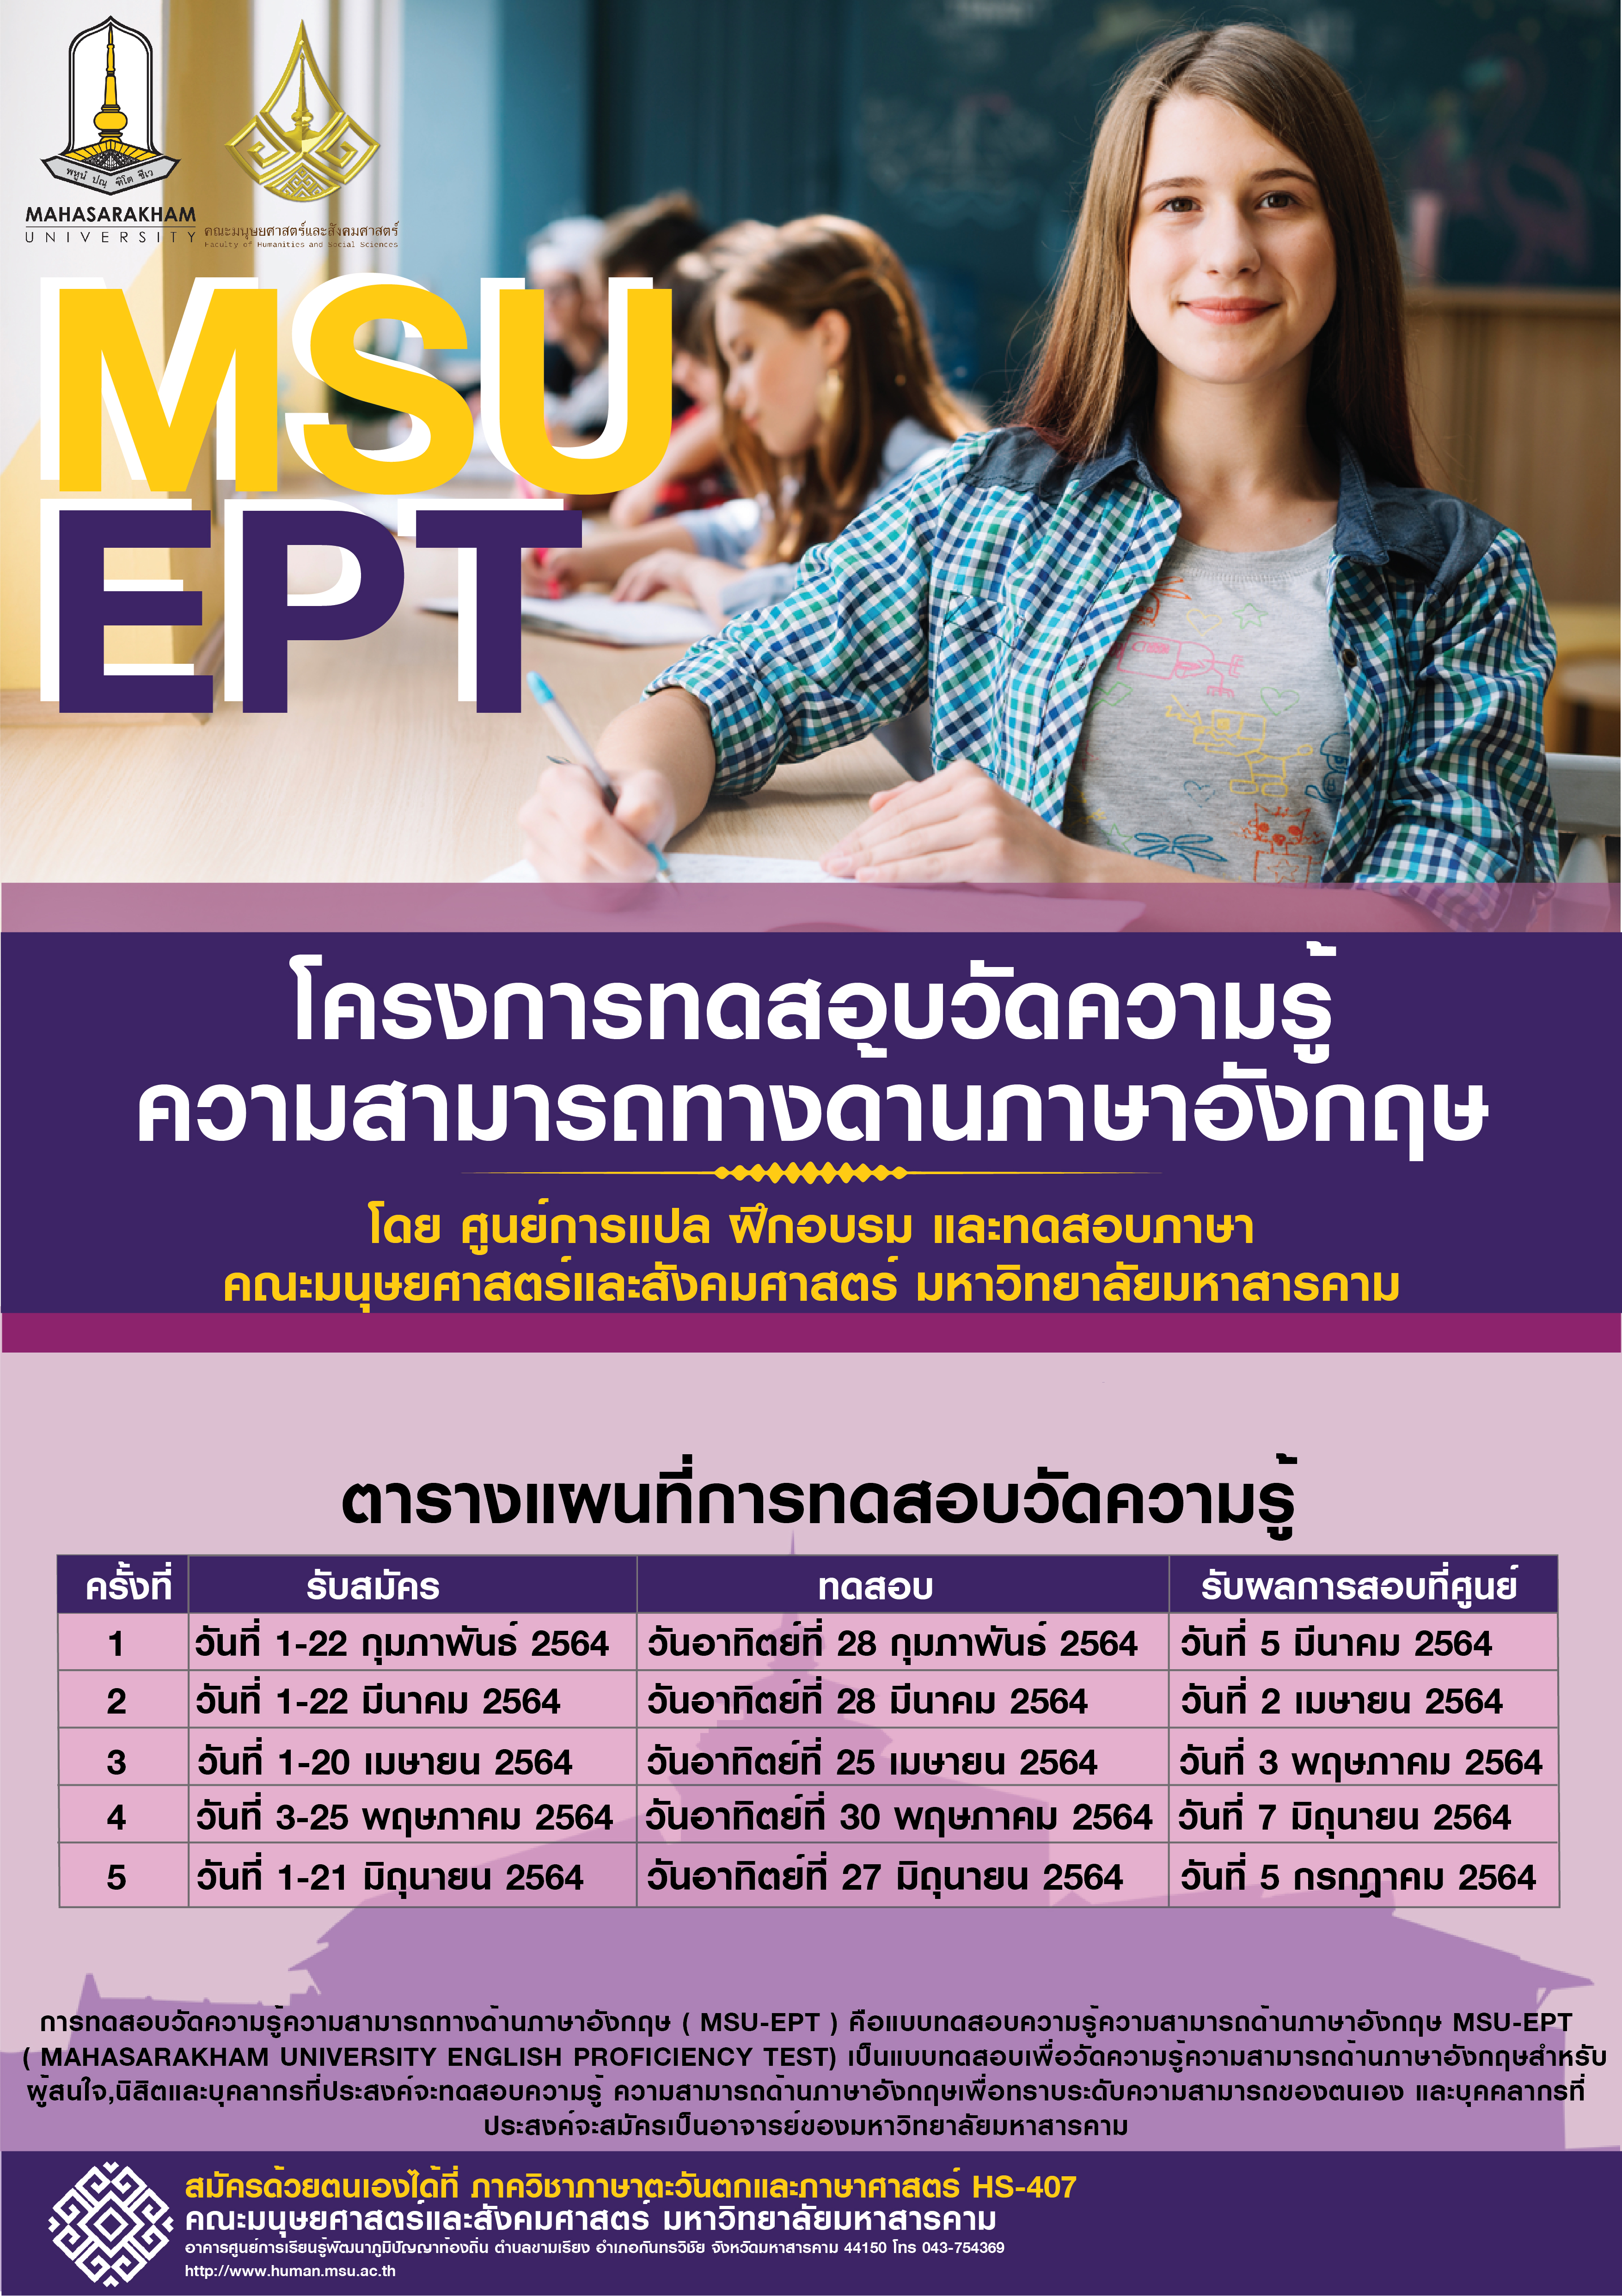 MSU EPT โครงการการทดสอบวัดความรู้ความสามารถทางด้านภาษาอังกฤษ